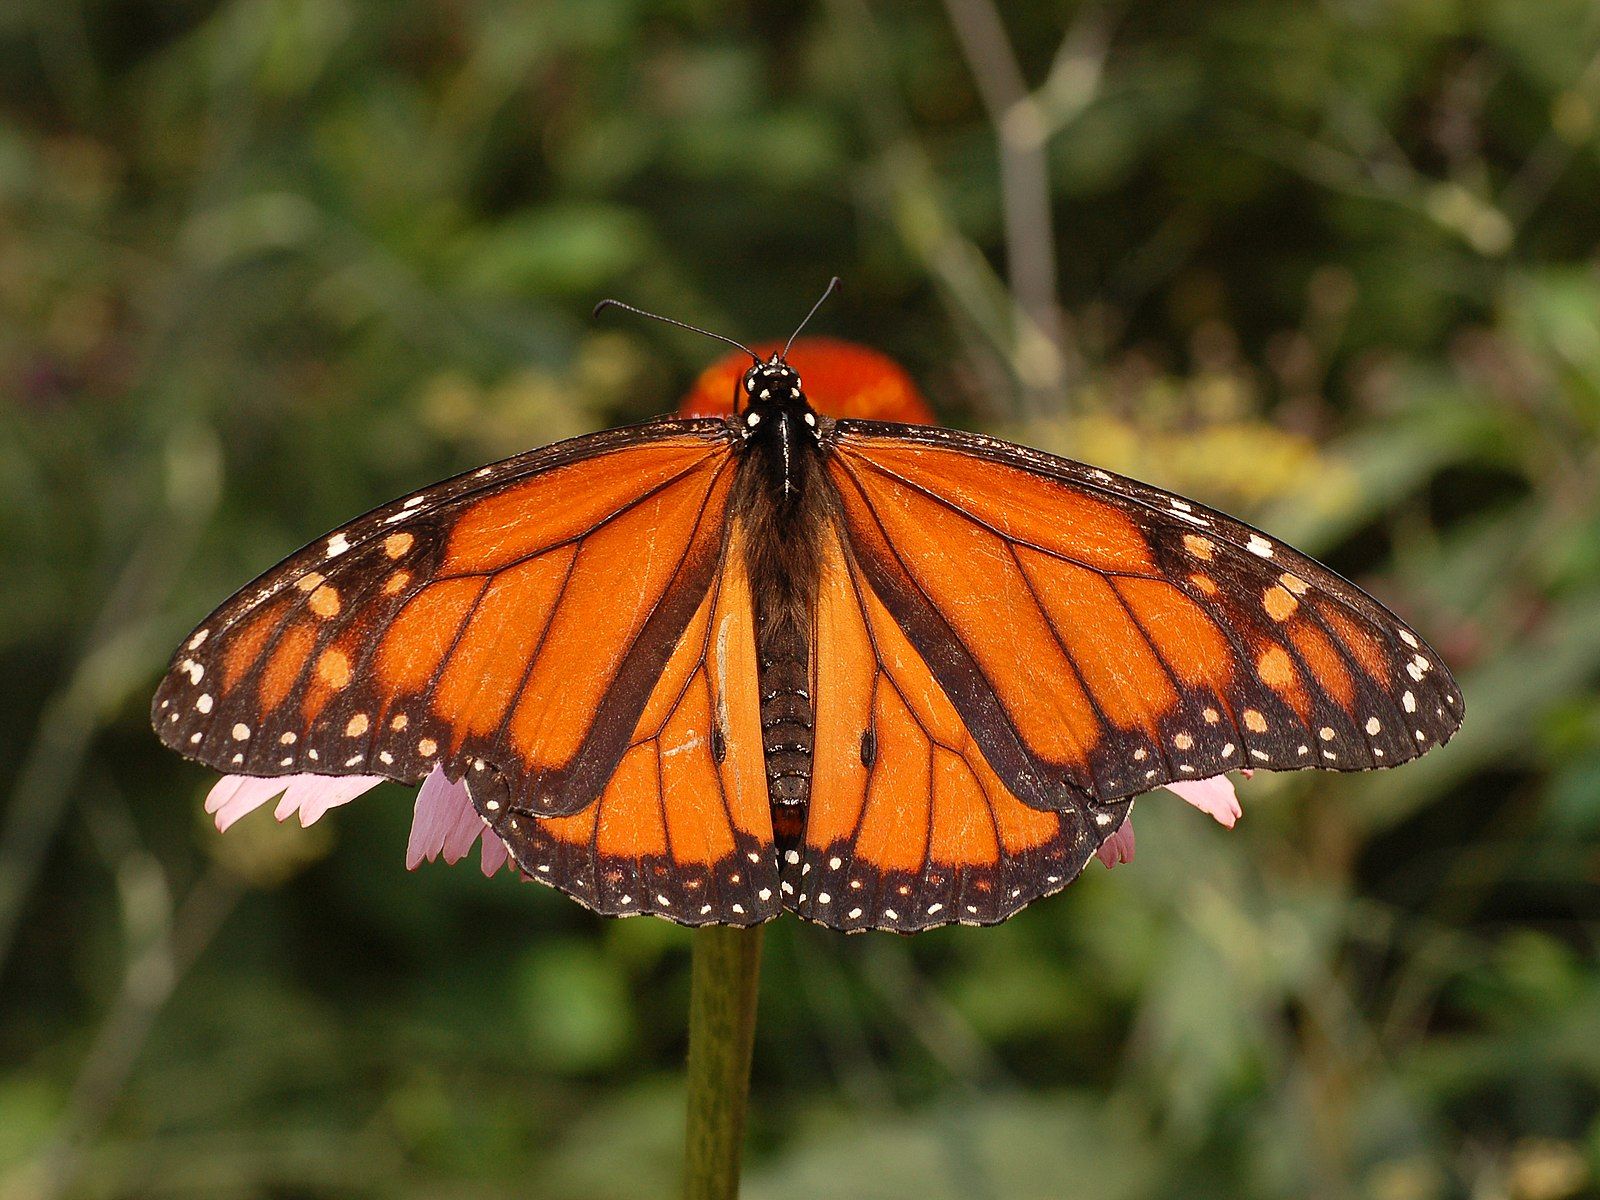 Monarch Butterfly by Derek Ramsey, Wikimedia Commons